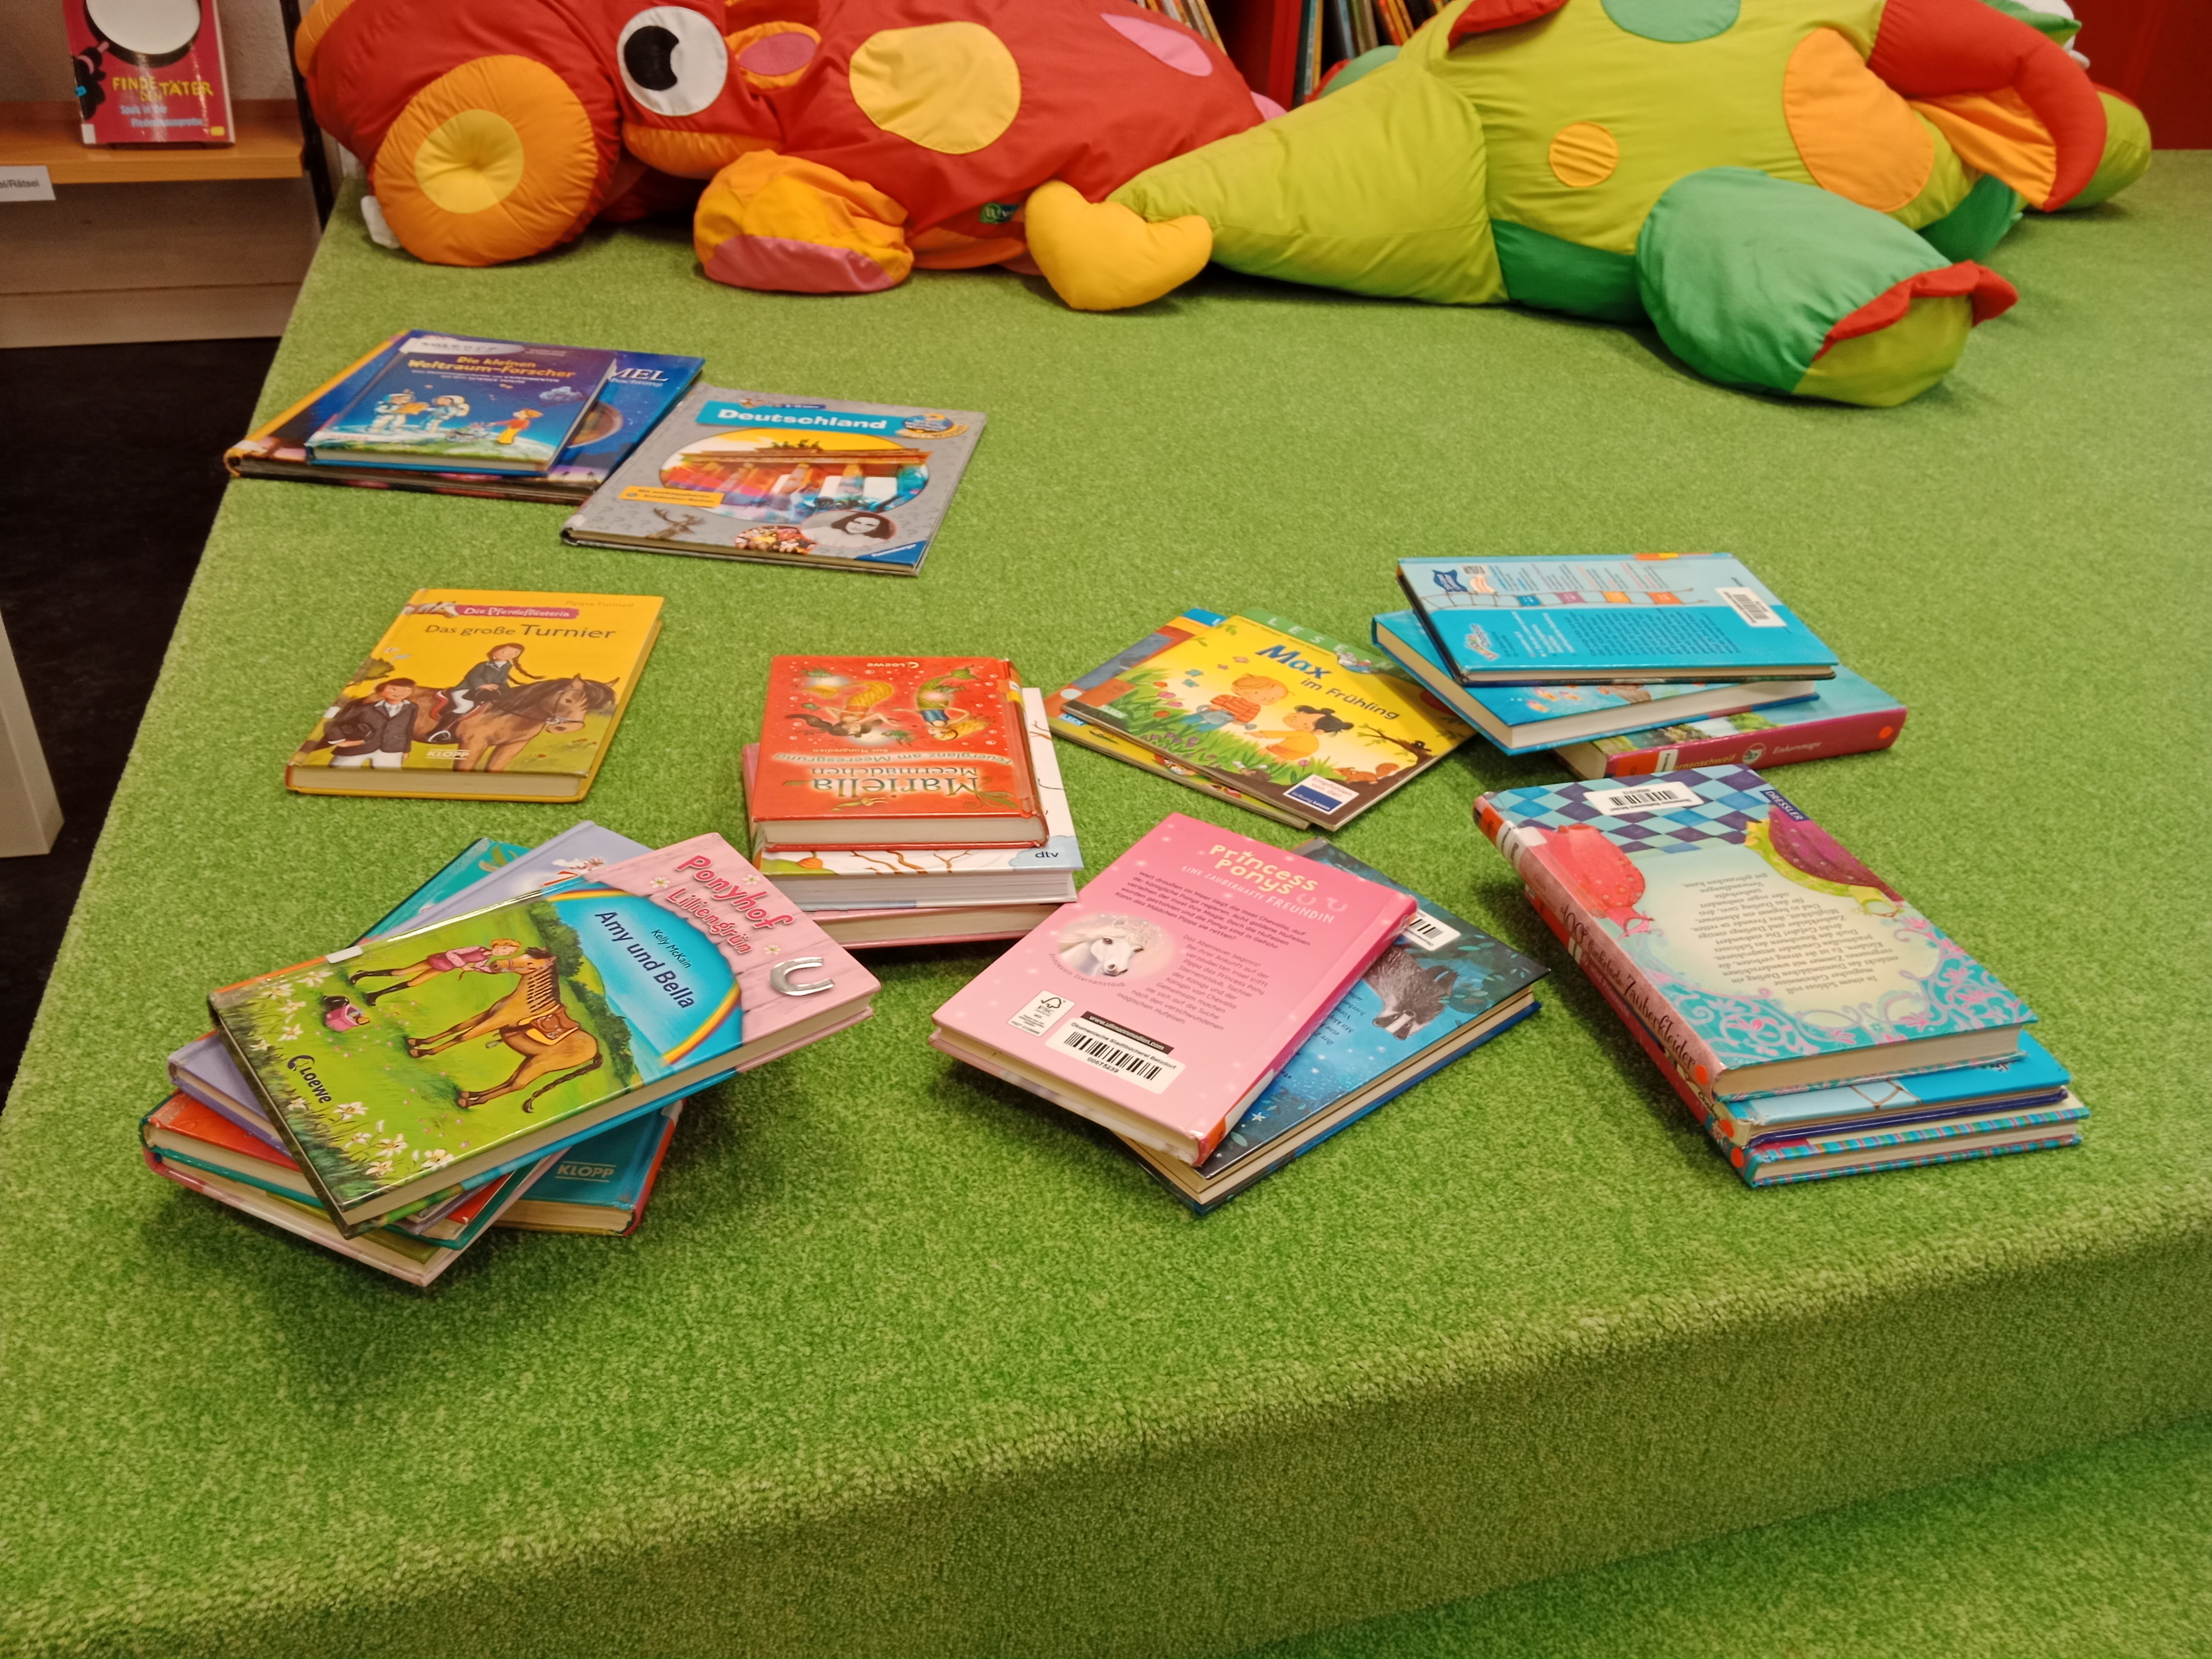 Mehrere Stapel Kinderbücher auf einem grünen Teppich.